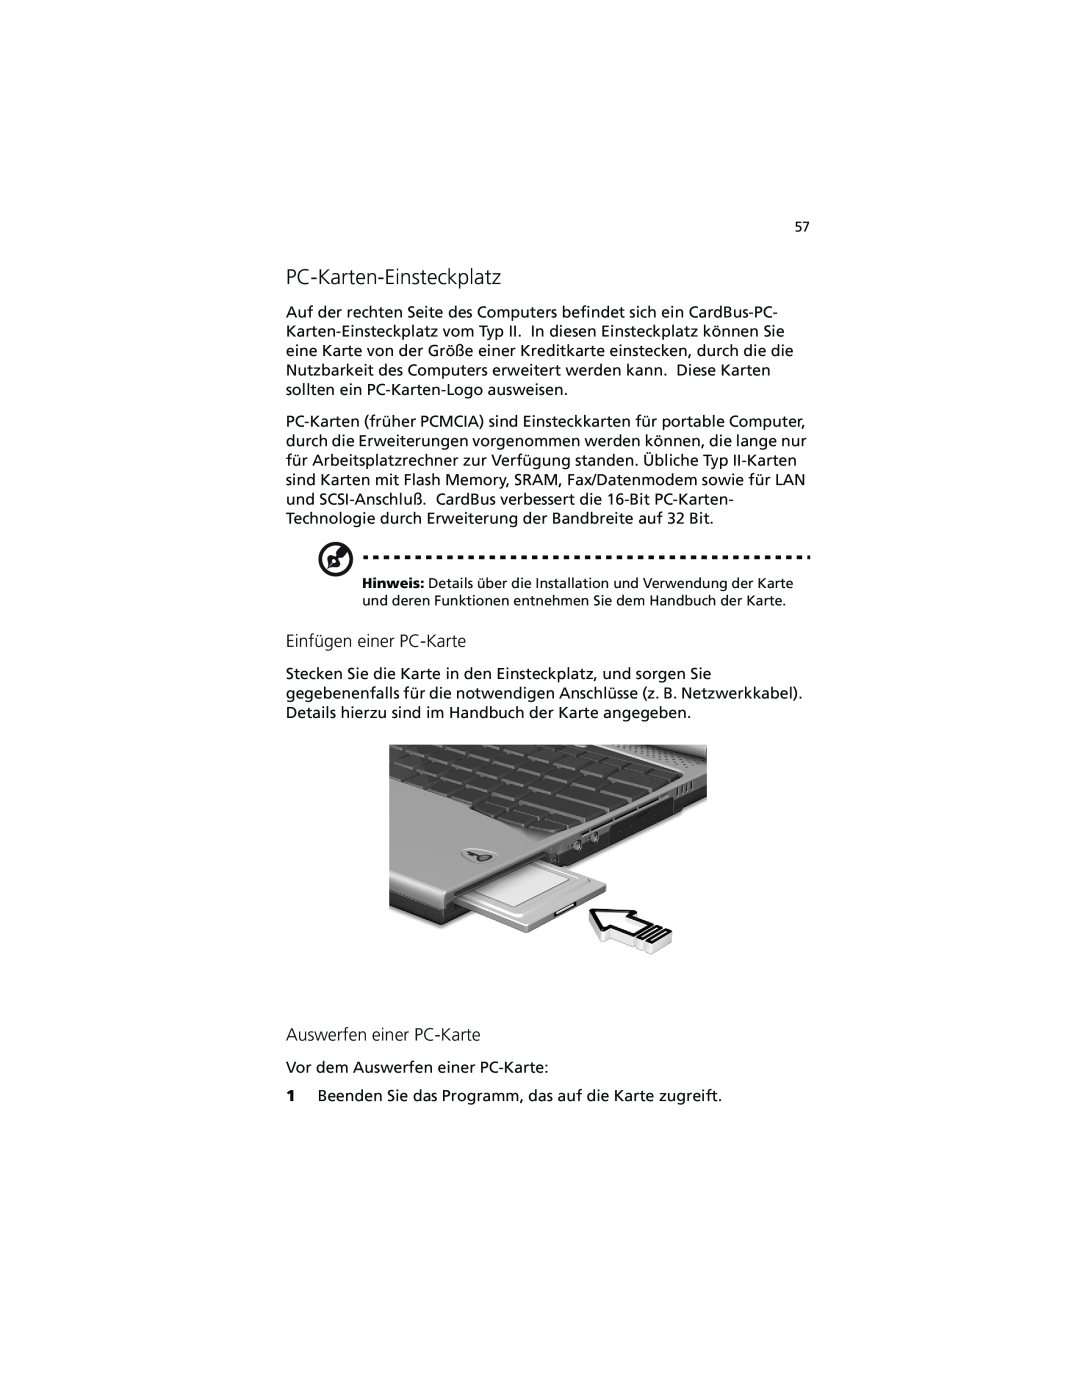 Acer C100-Series manual PC-Karten-Einsteckplatz, Einfügen einer PC-Karte, Auswerfen einer PC-Karte 